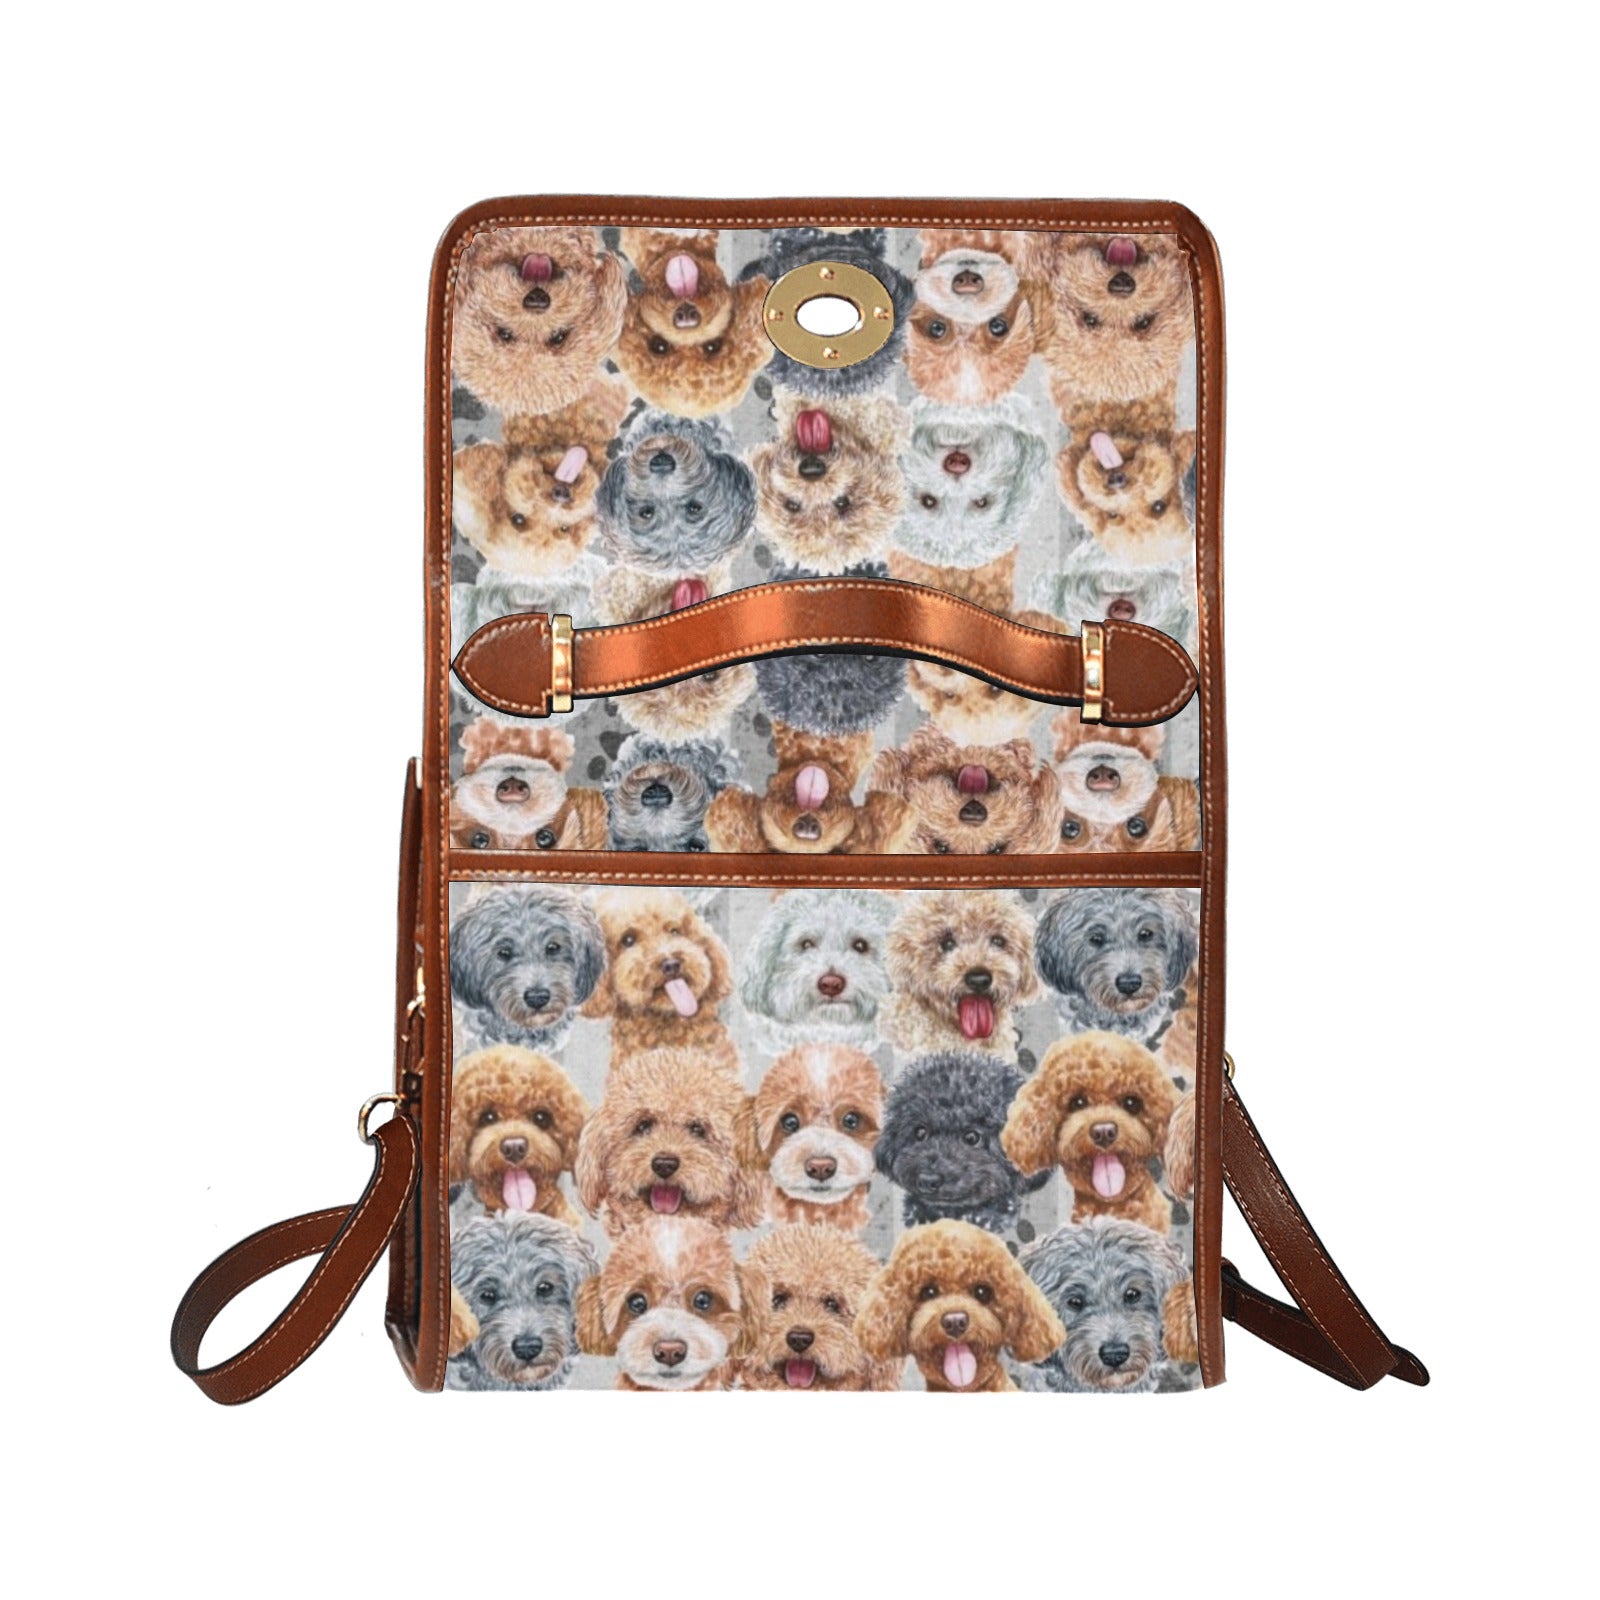 Poodle - Waterproof Canvas Handbag